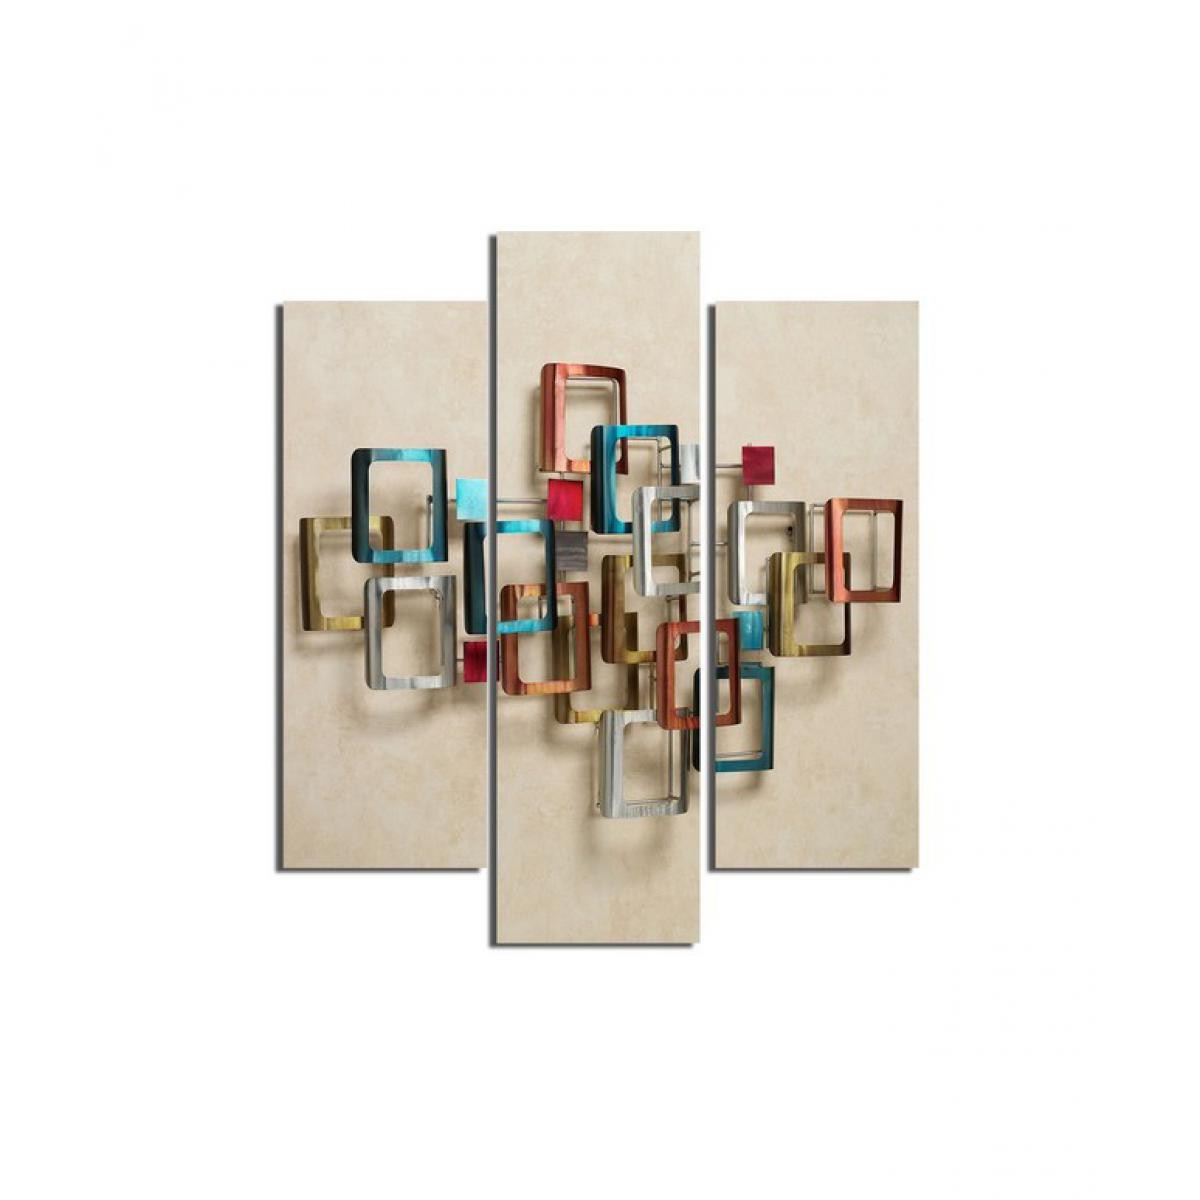 Homemania - HOMEMANIA Tableau Cube - 3 pièces - géométriques - pour le salon, la chambre - Multicouleur en MDF, 57 x 0,3 x 60 cm - Tableaux, peintures